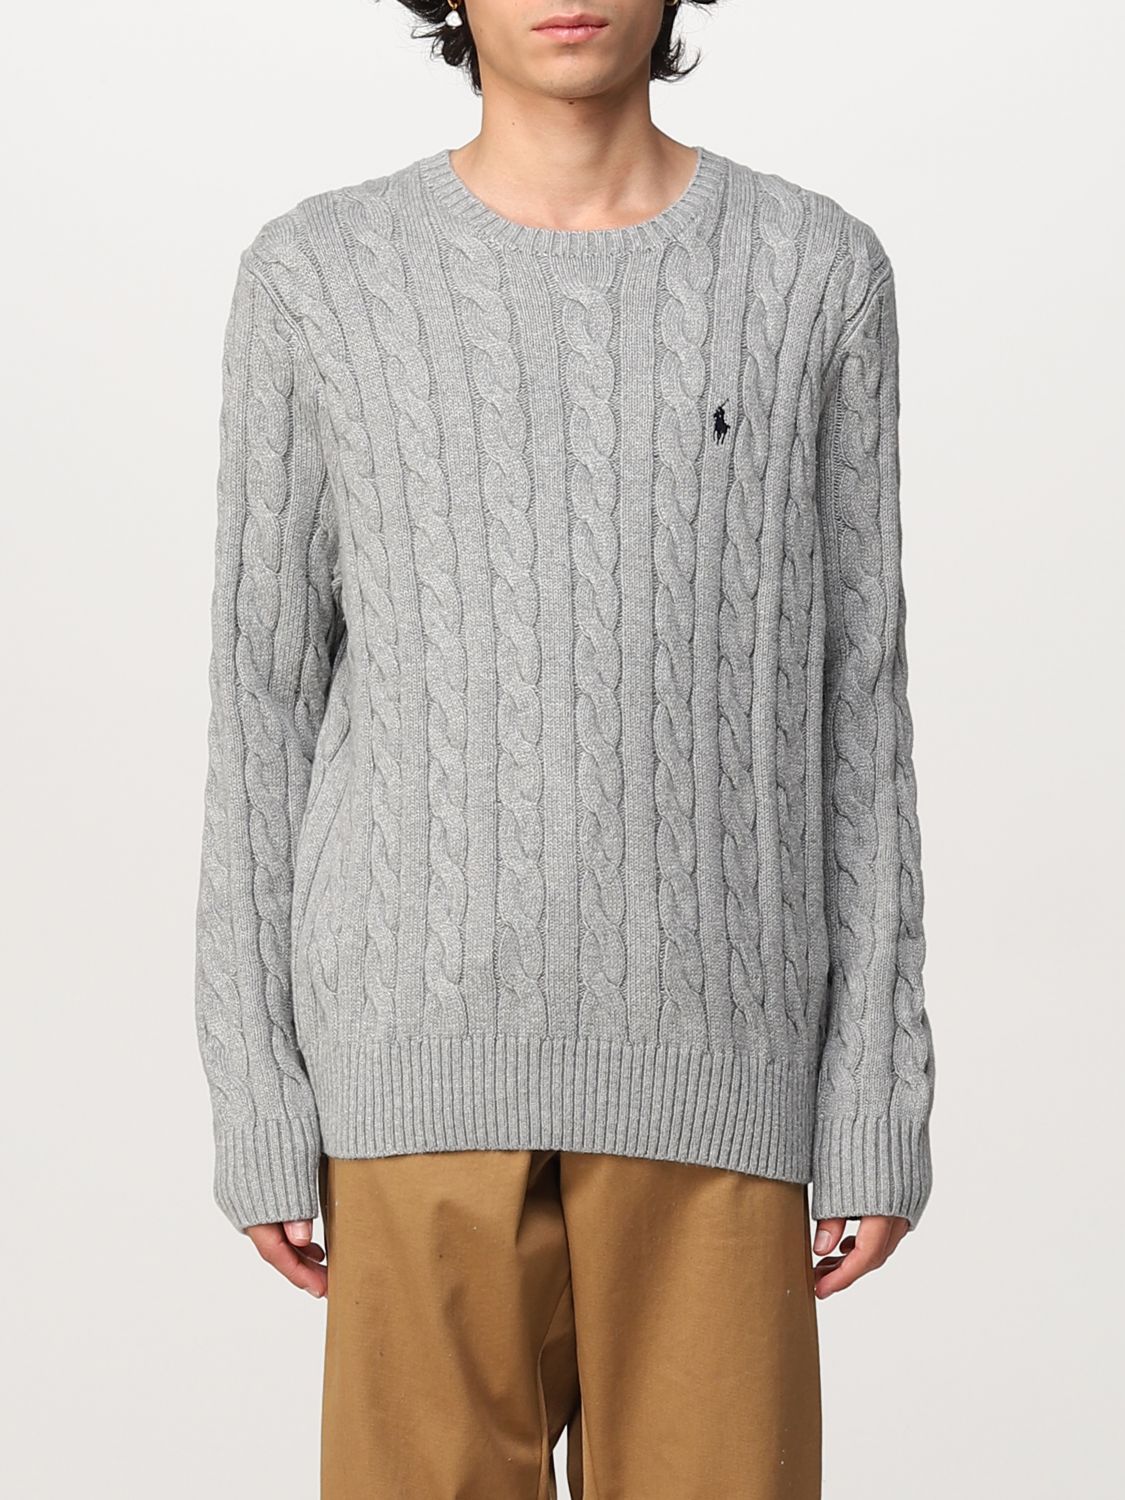 Polo Ralph Lauren セーター メンズ グレー Giglio Comオンラインのpolo Ralph Lauren セーター